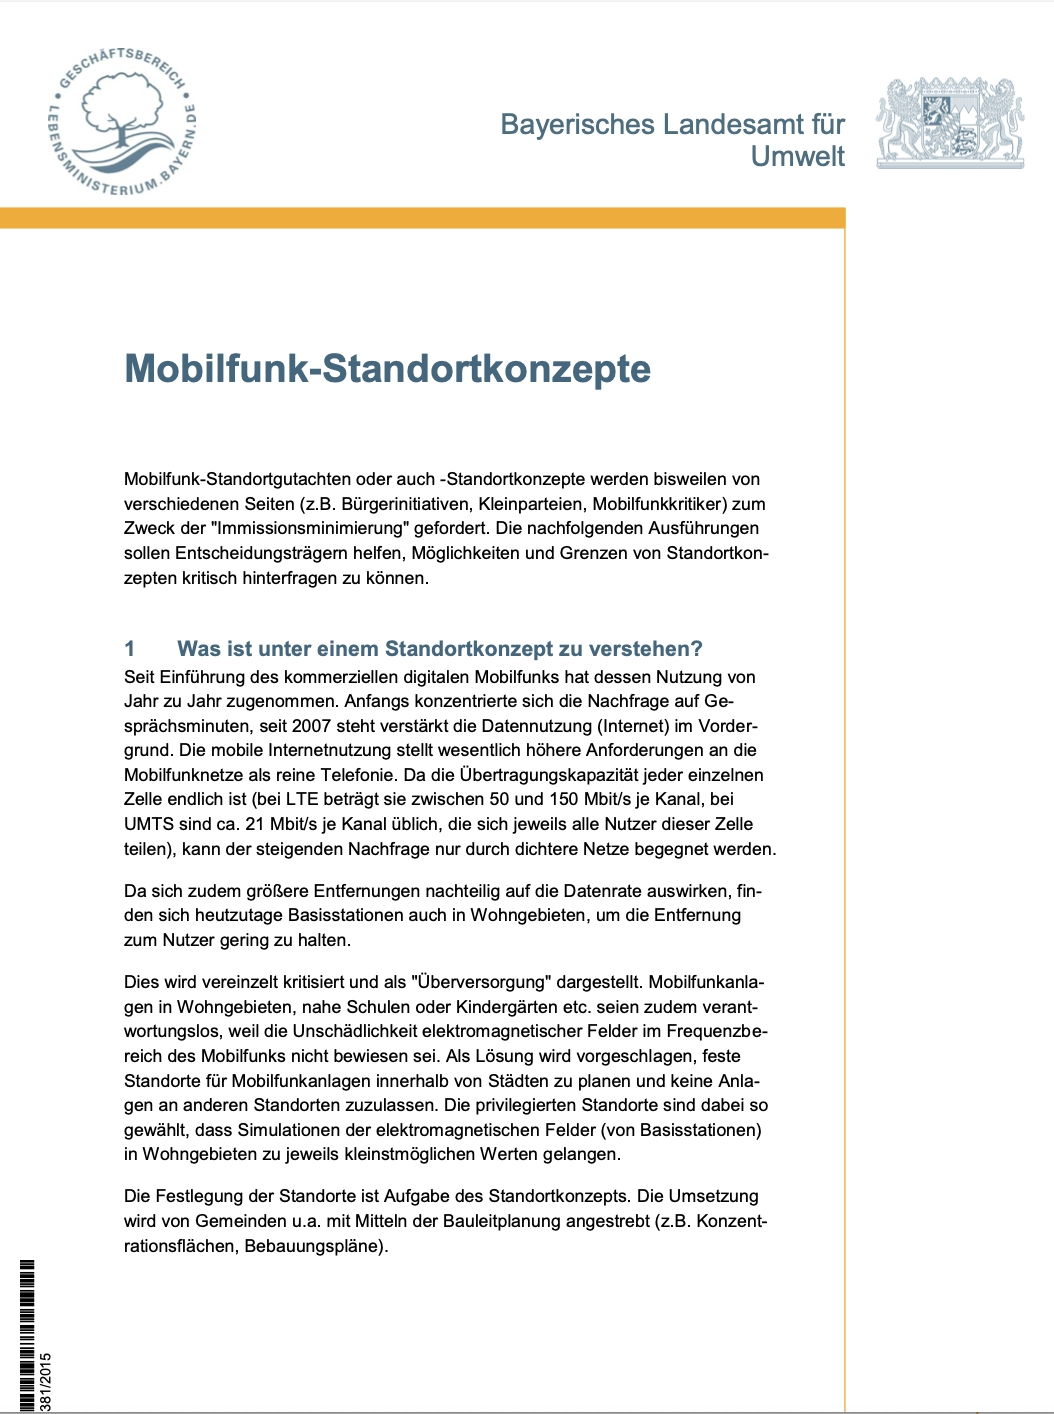 Dieses Dokument des Bayerischen Landesamts für Umwelt informiert zu den Mobilfunk-Standortkonzepten.